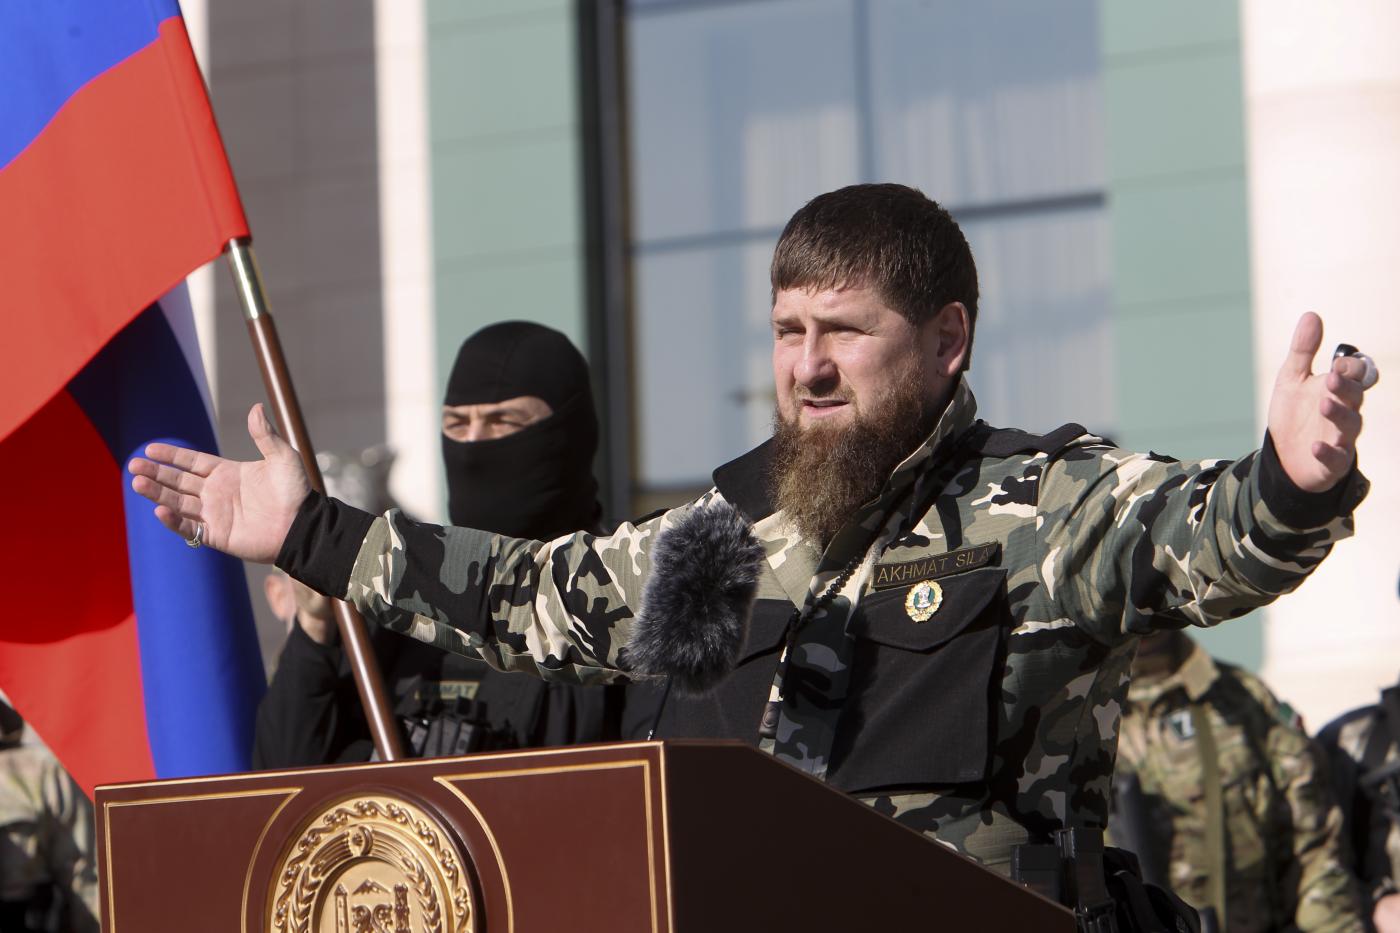 Kadyrov il guerrafondaio: "La Russia dovrebbe usare armi nucleari a bassa potenza"